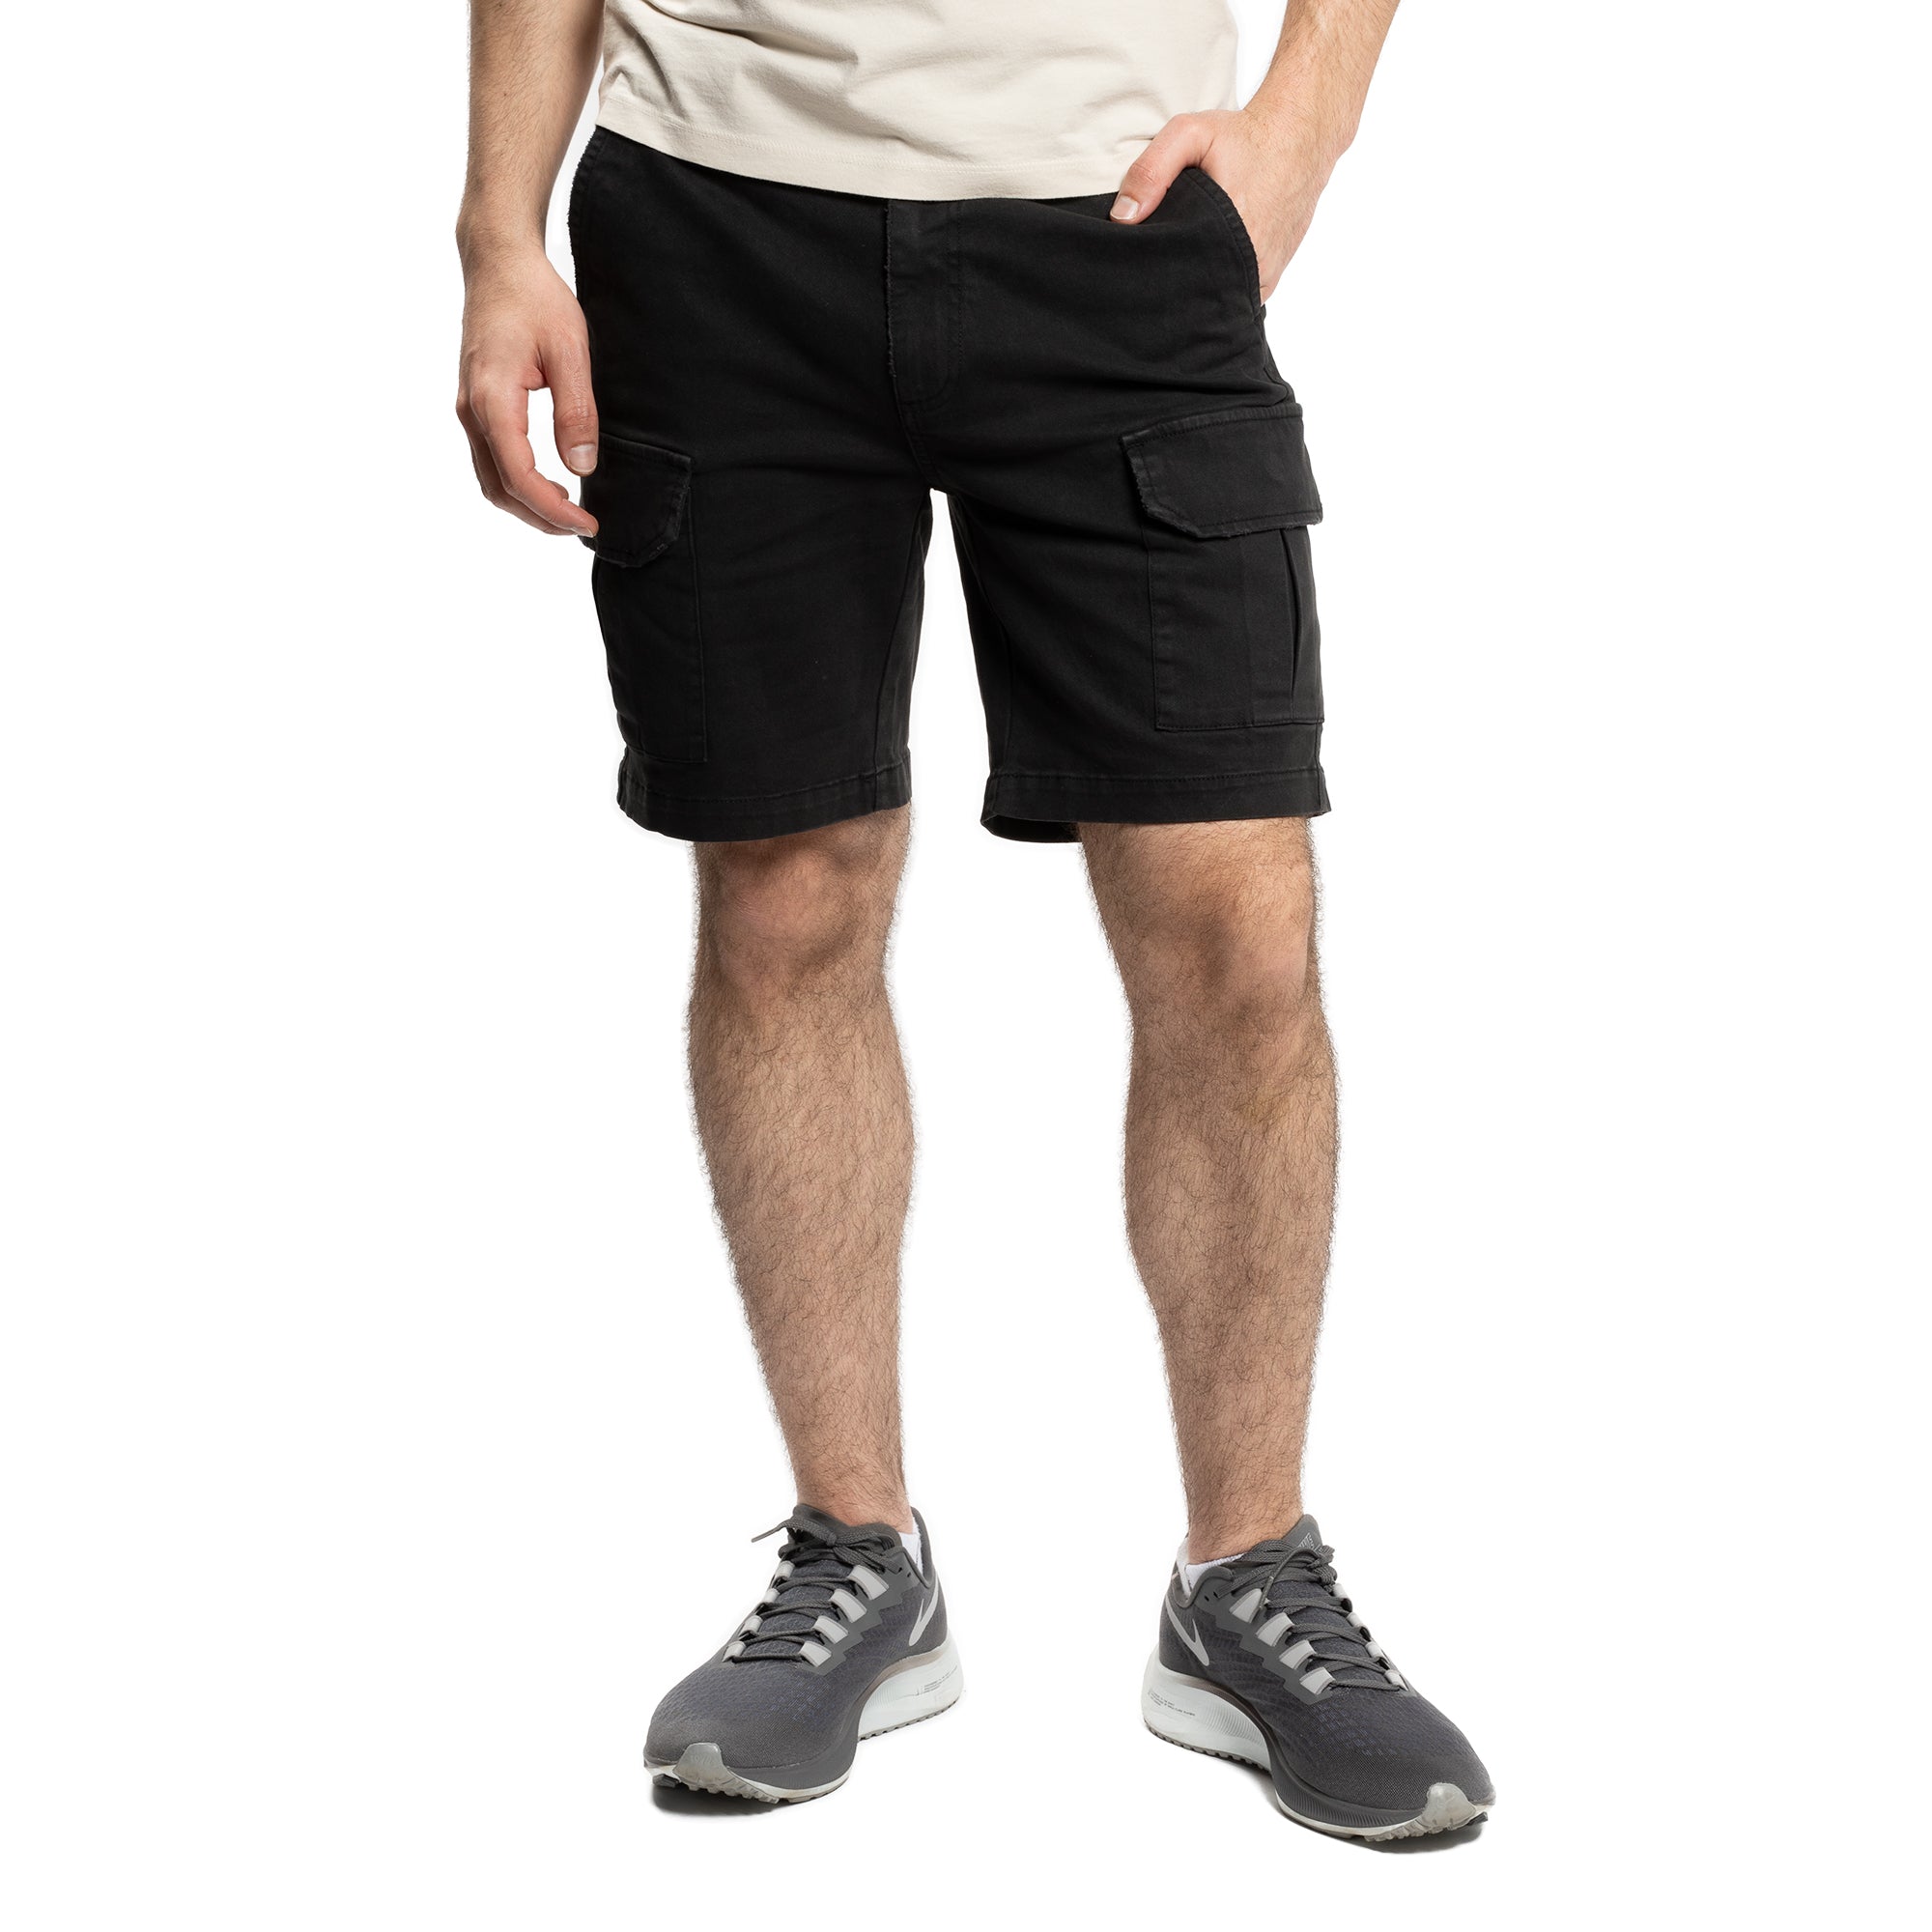 Cargo Shorts - Black